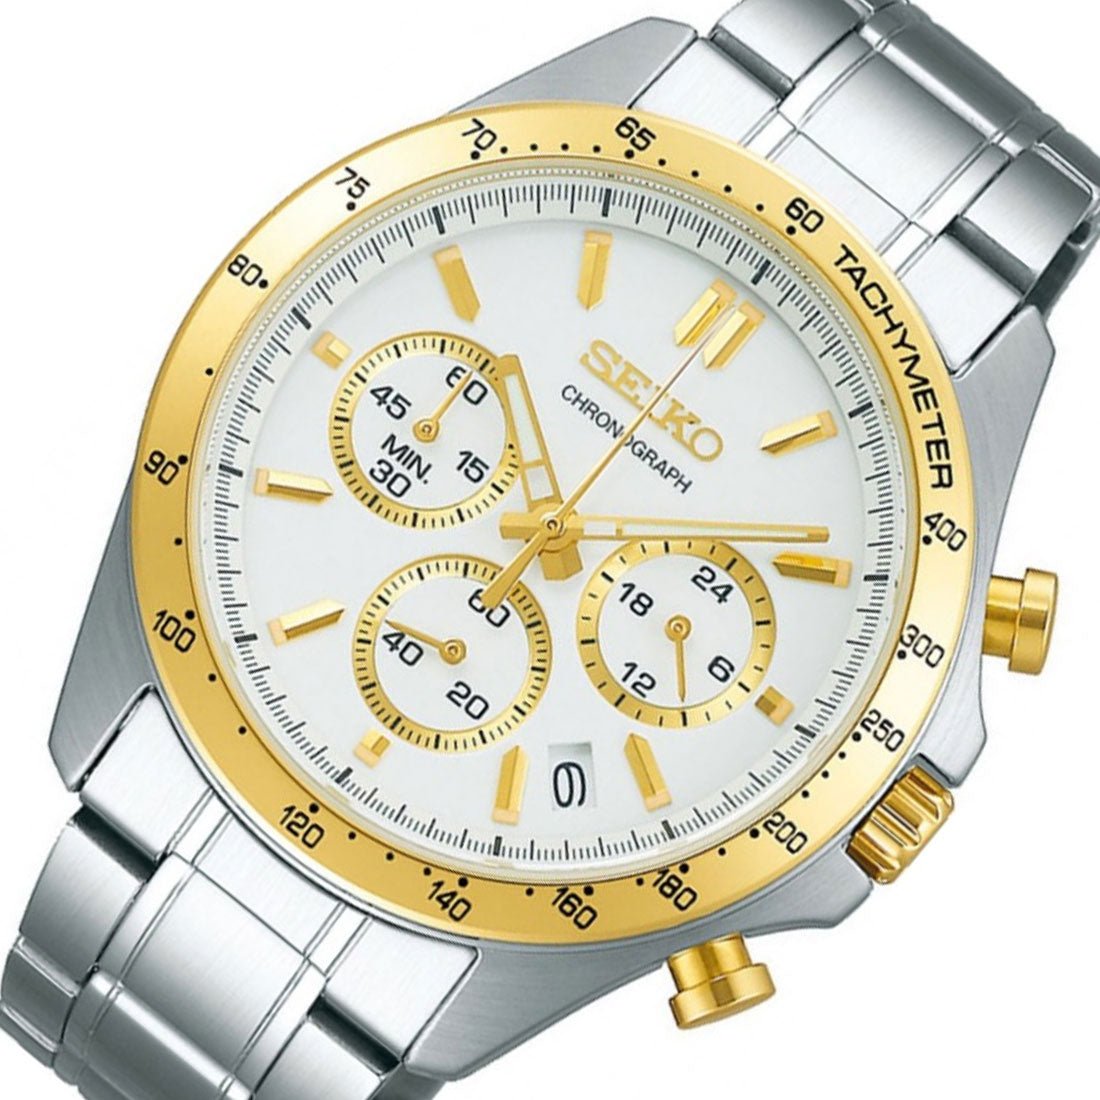 Seiko Spirit JDM Selection Chronograph SBTR024 White Dial Quartz Stainless Steel Watch -Seiko